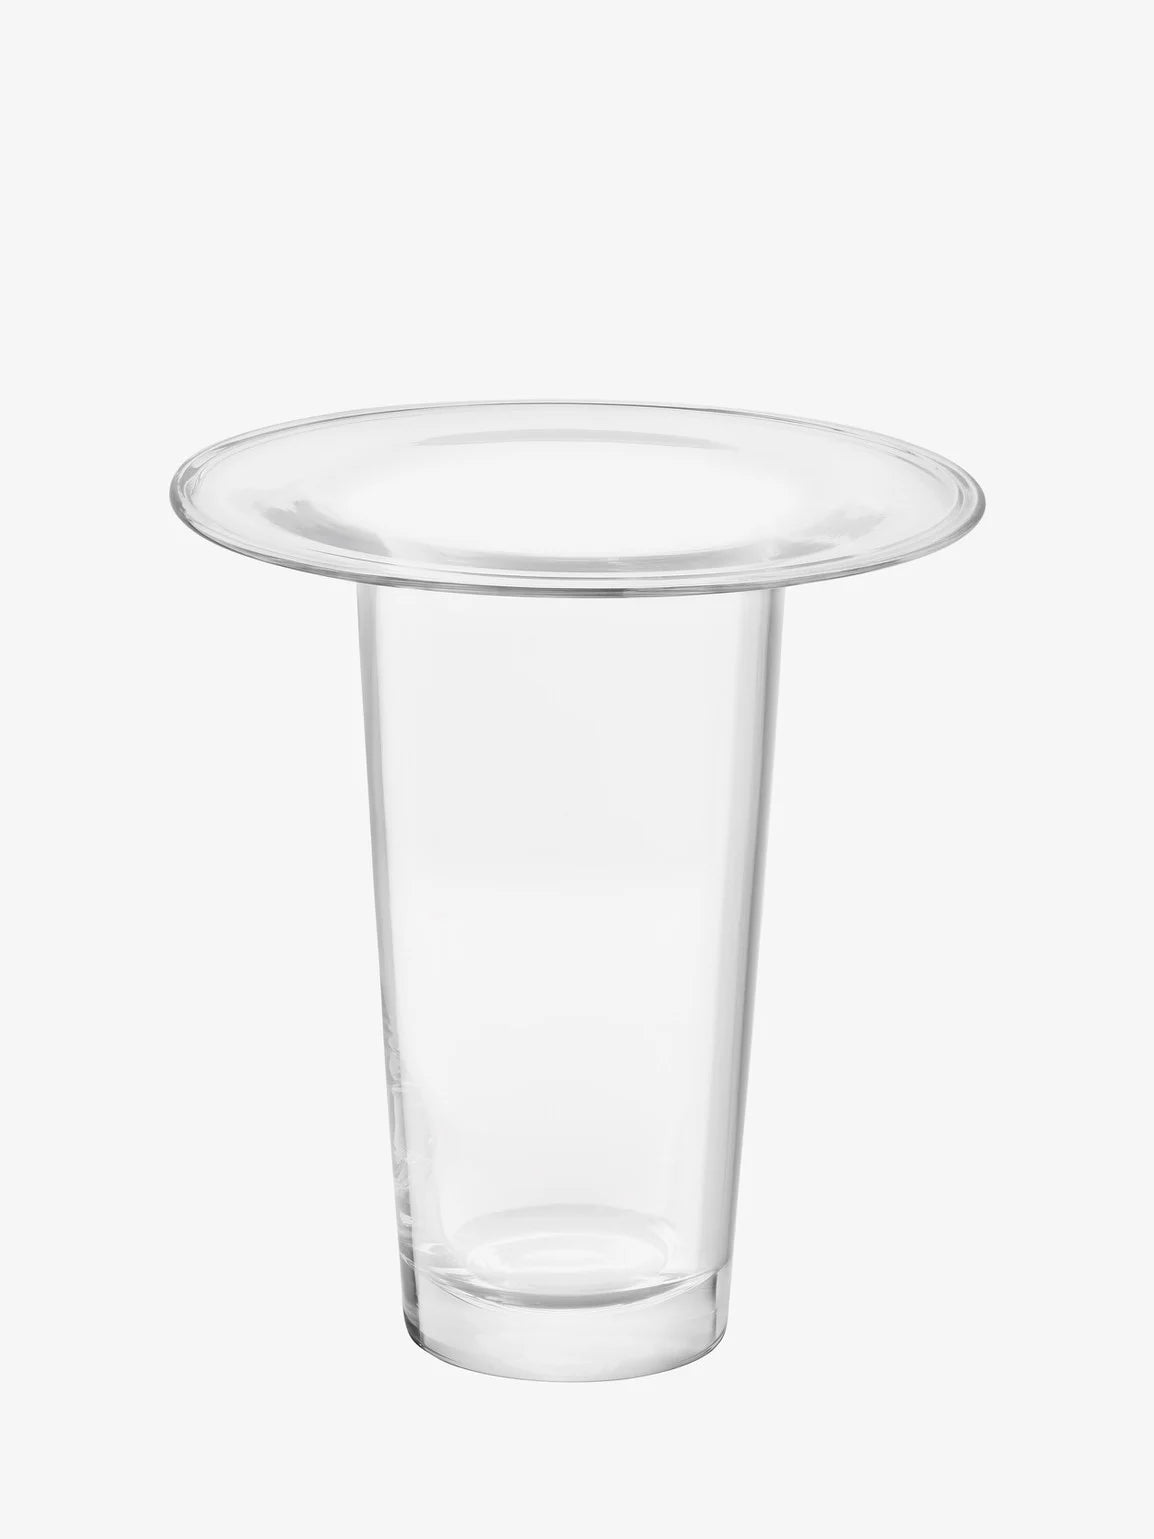 Victoria Vase/Lantern Clear